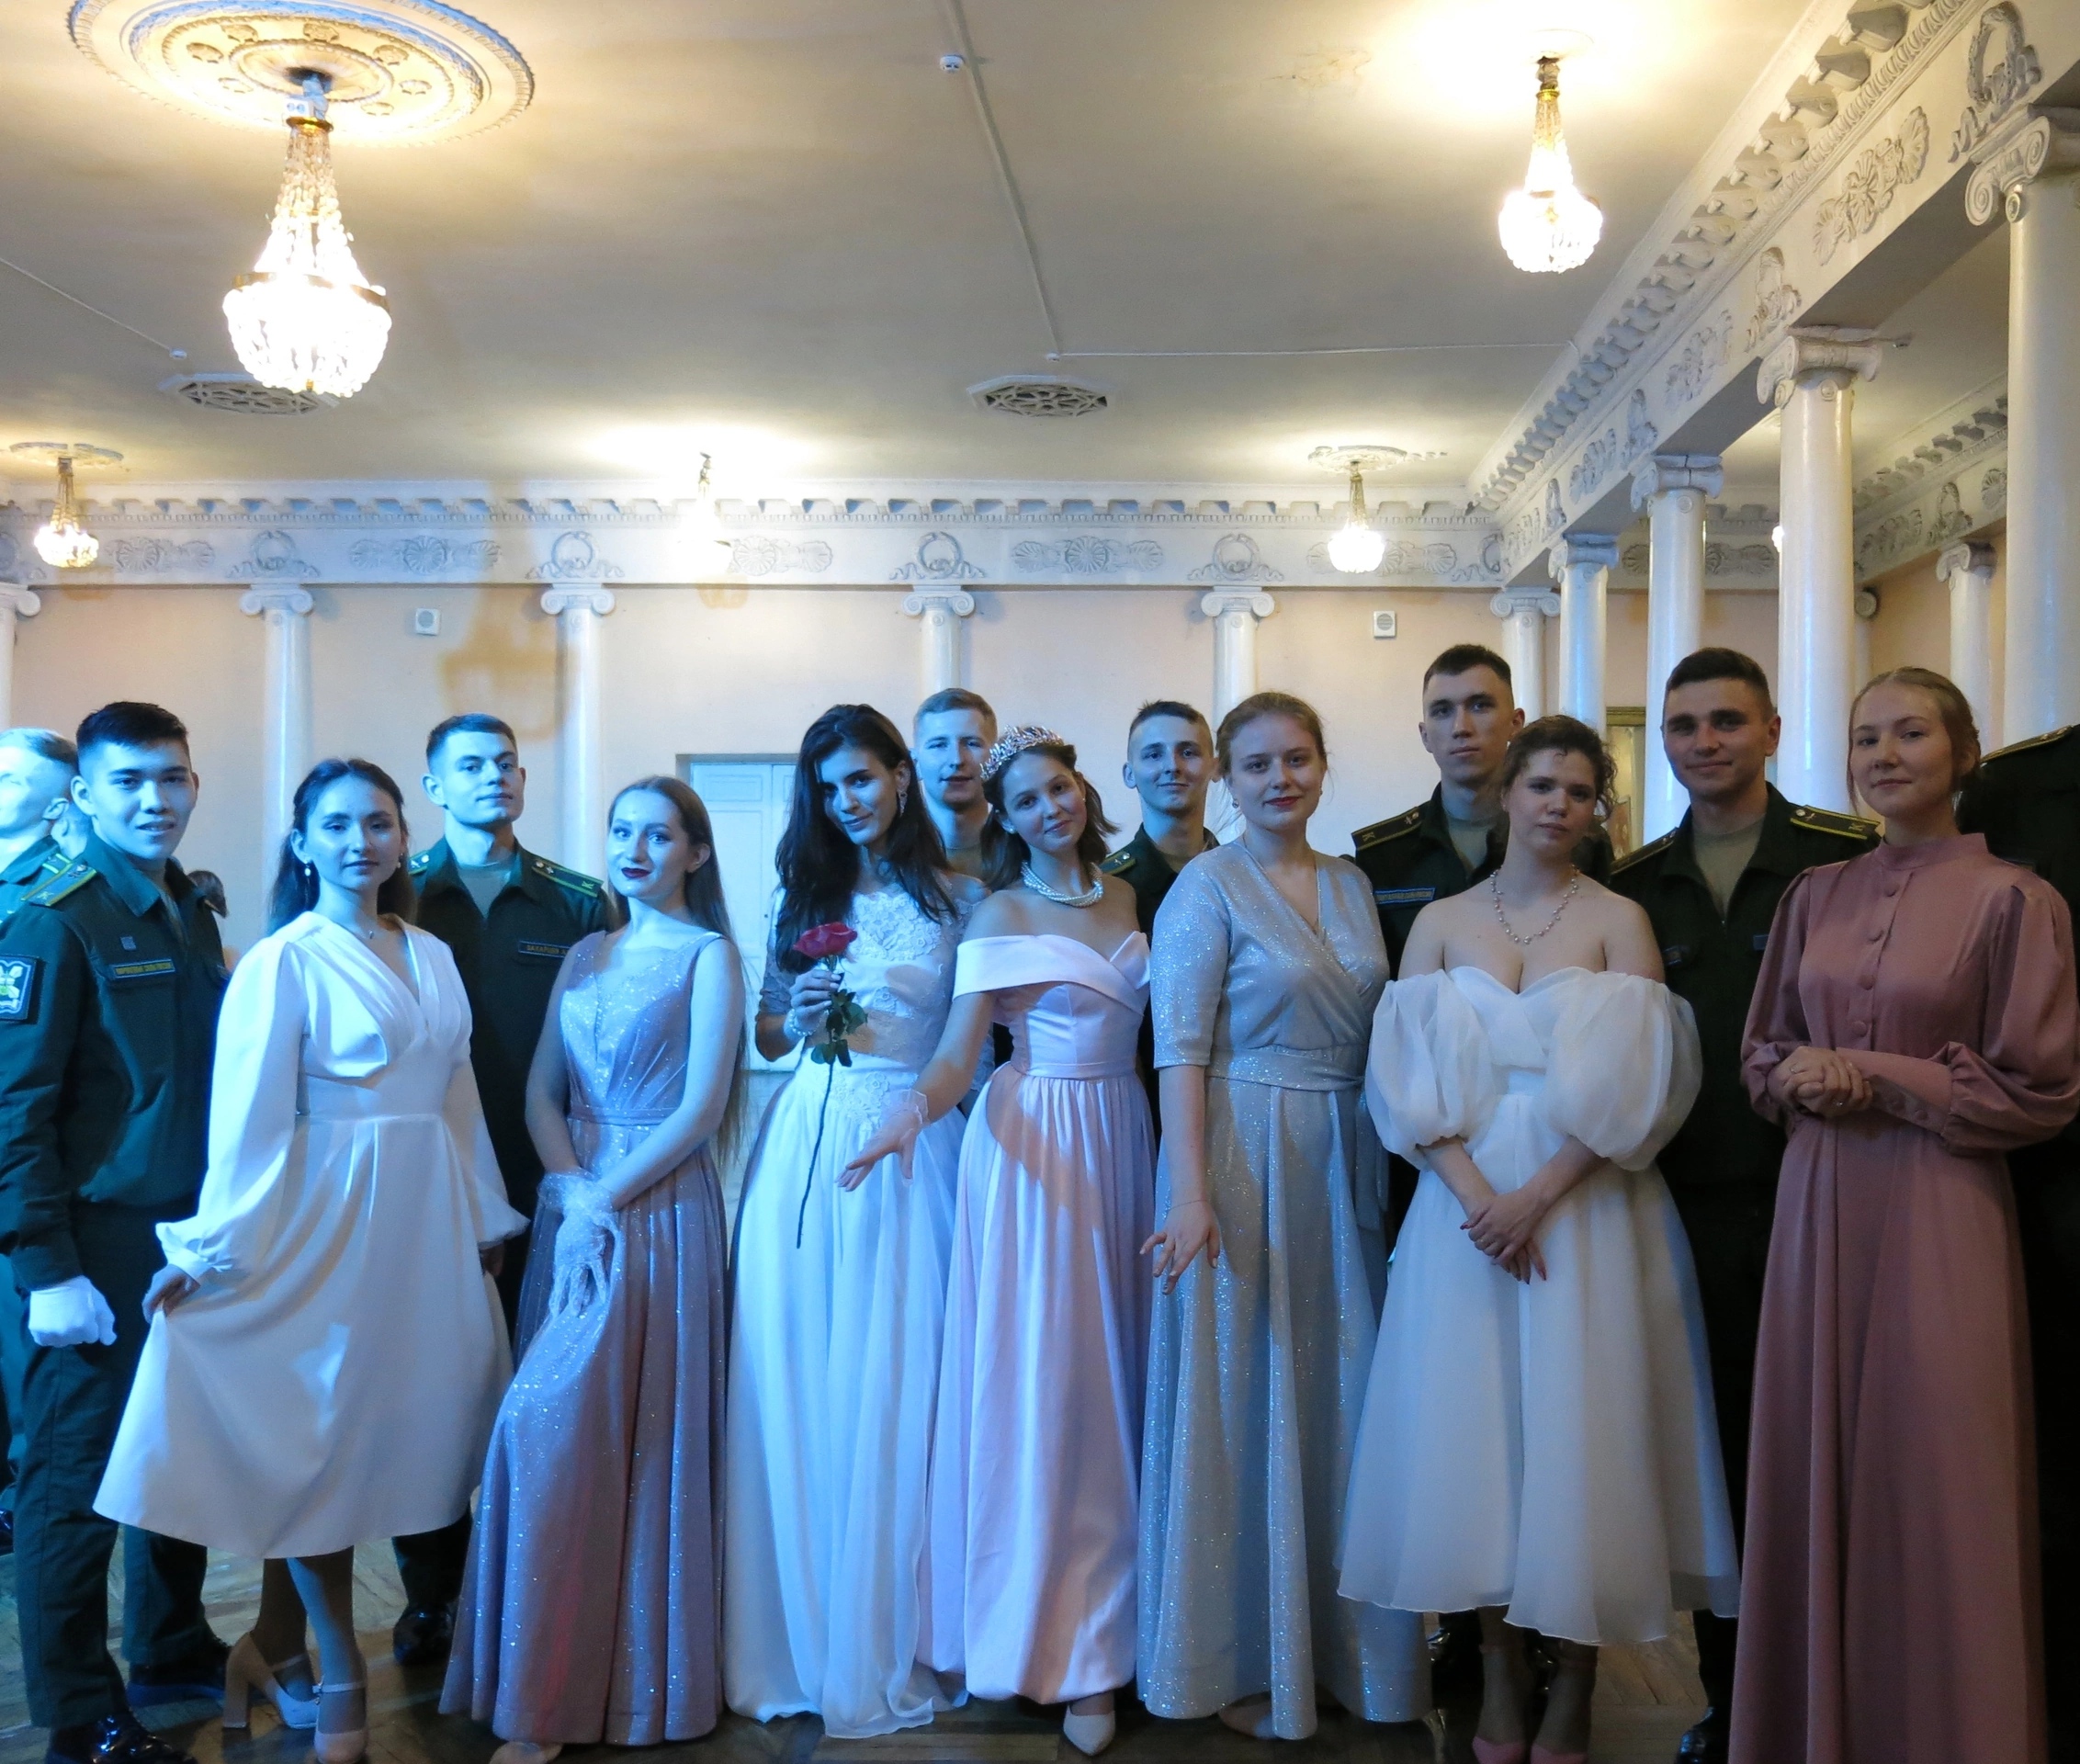 13 ноября студентки Финуниверситета приняли участие в мероприятии - курсантский бал в Военно-космической академии имени А.Ф. Можайского.